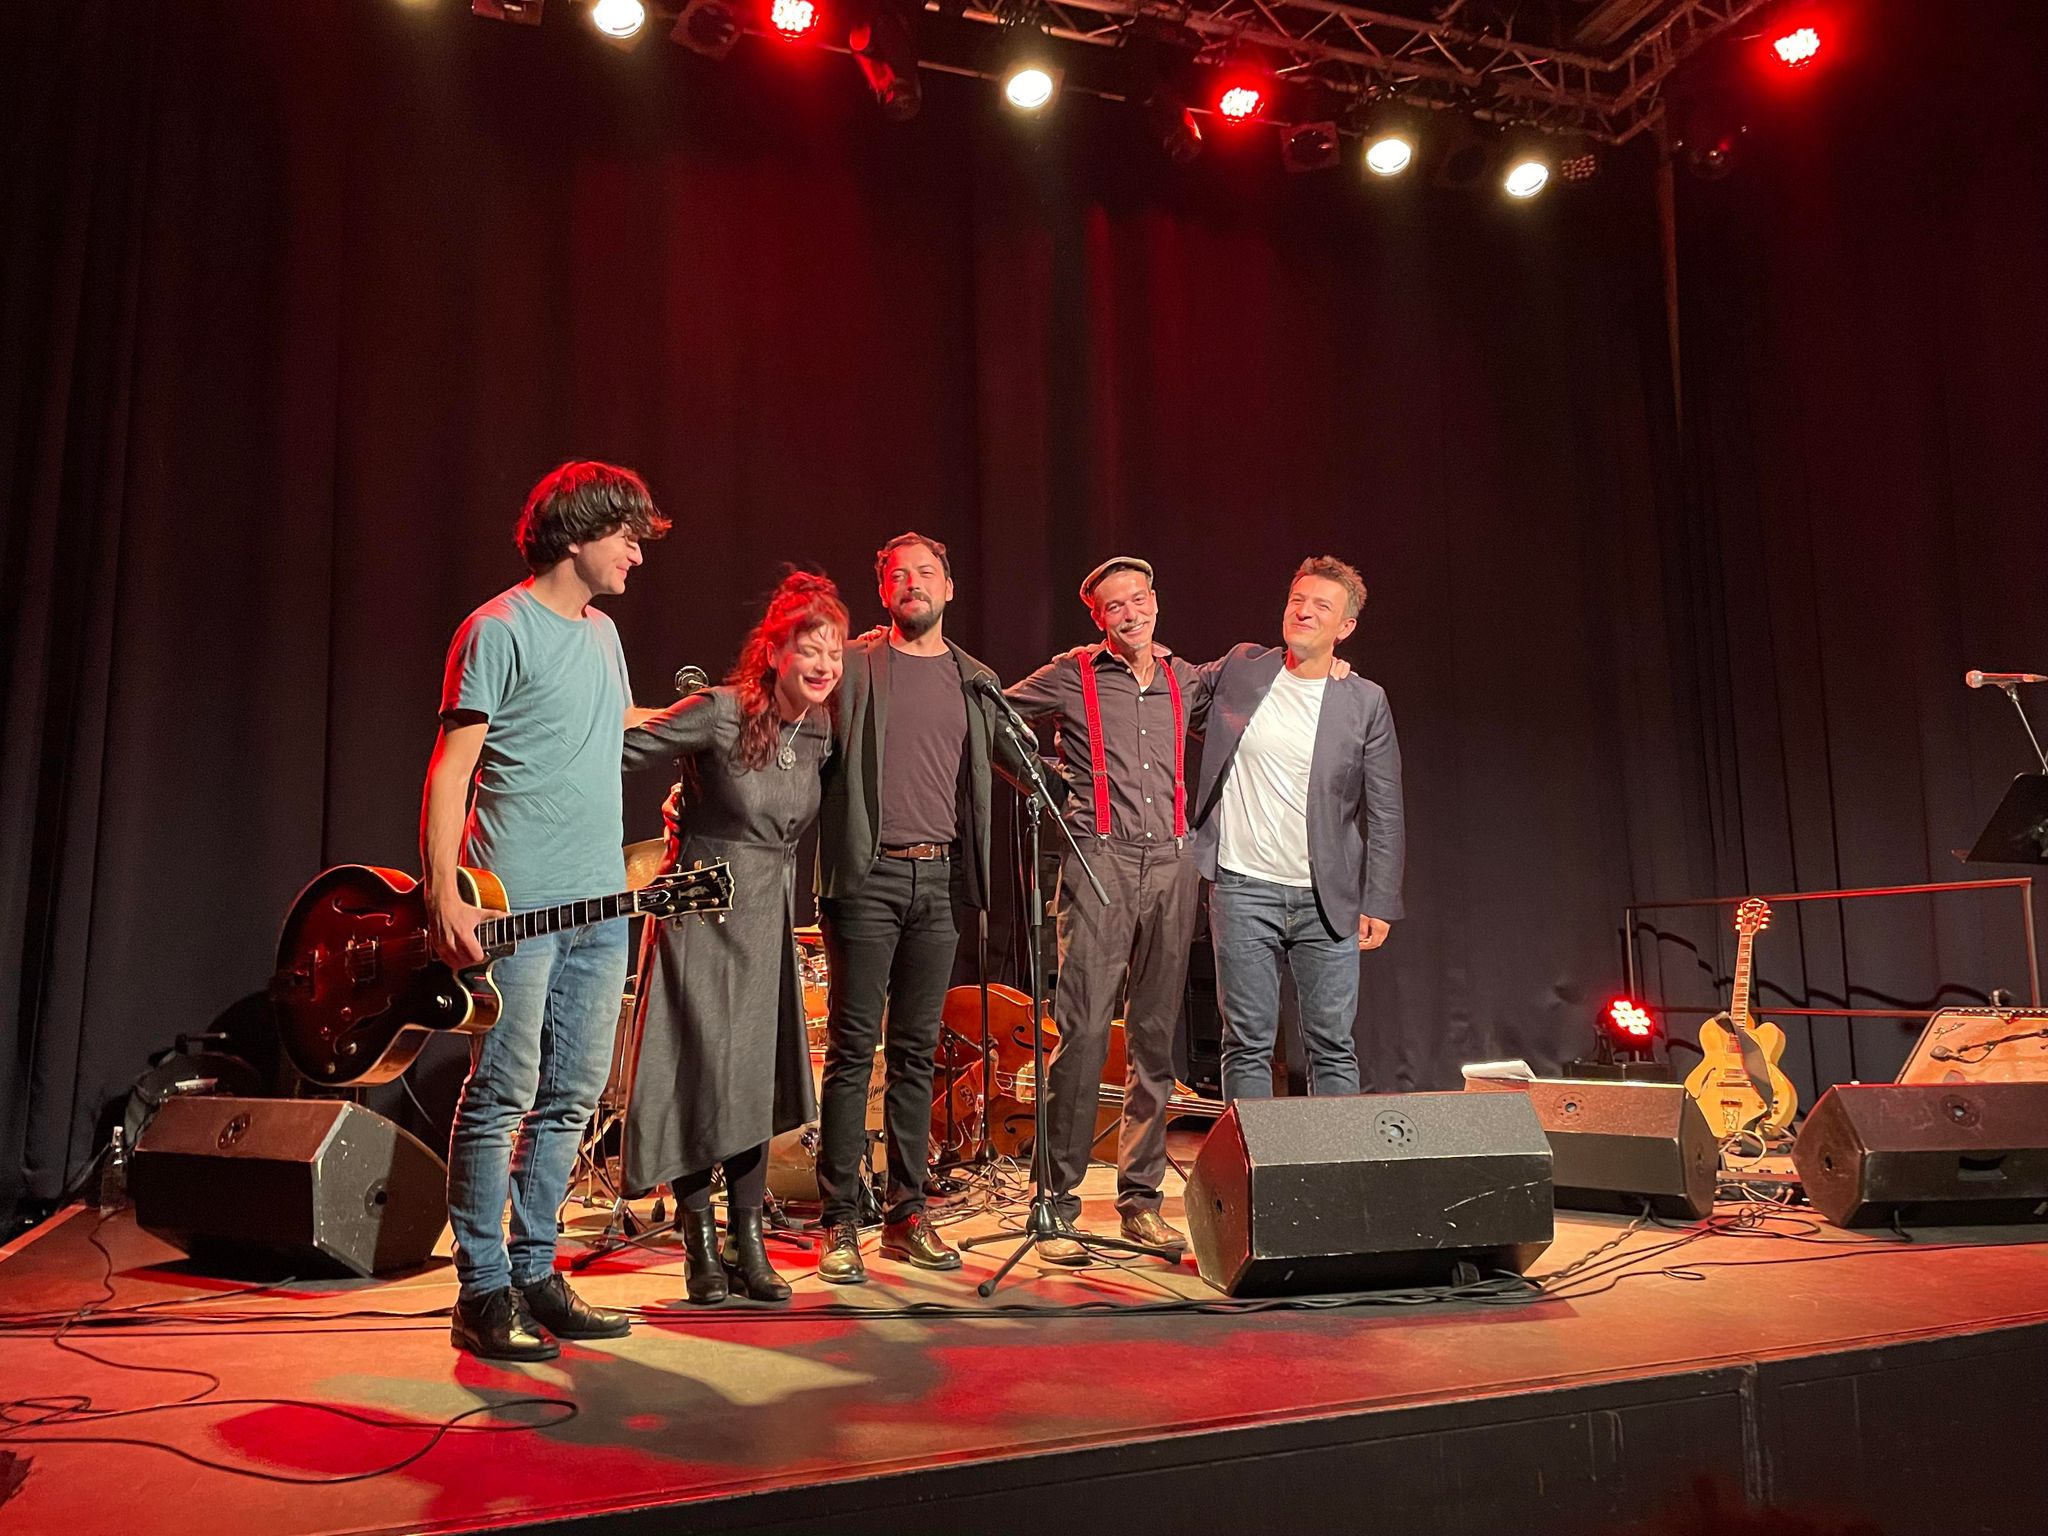 Mbahet koncerti i Visar Kuqi Trio me projektin e dytë “Departures” në Bernë